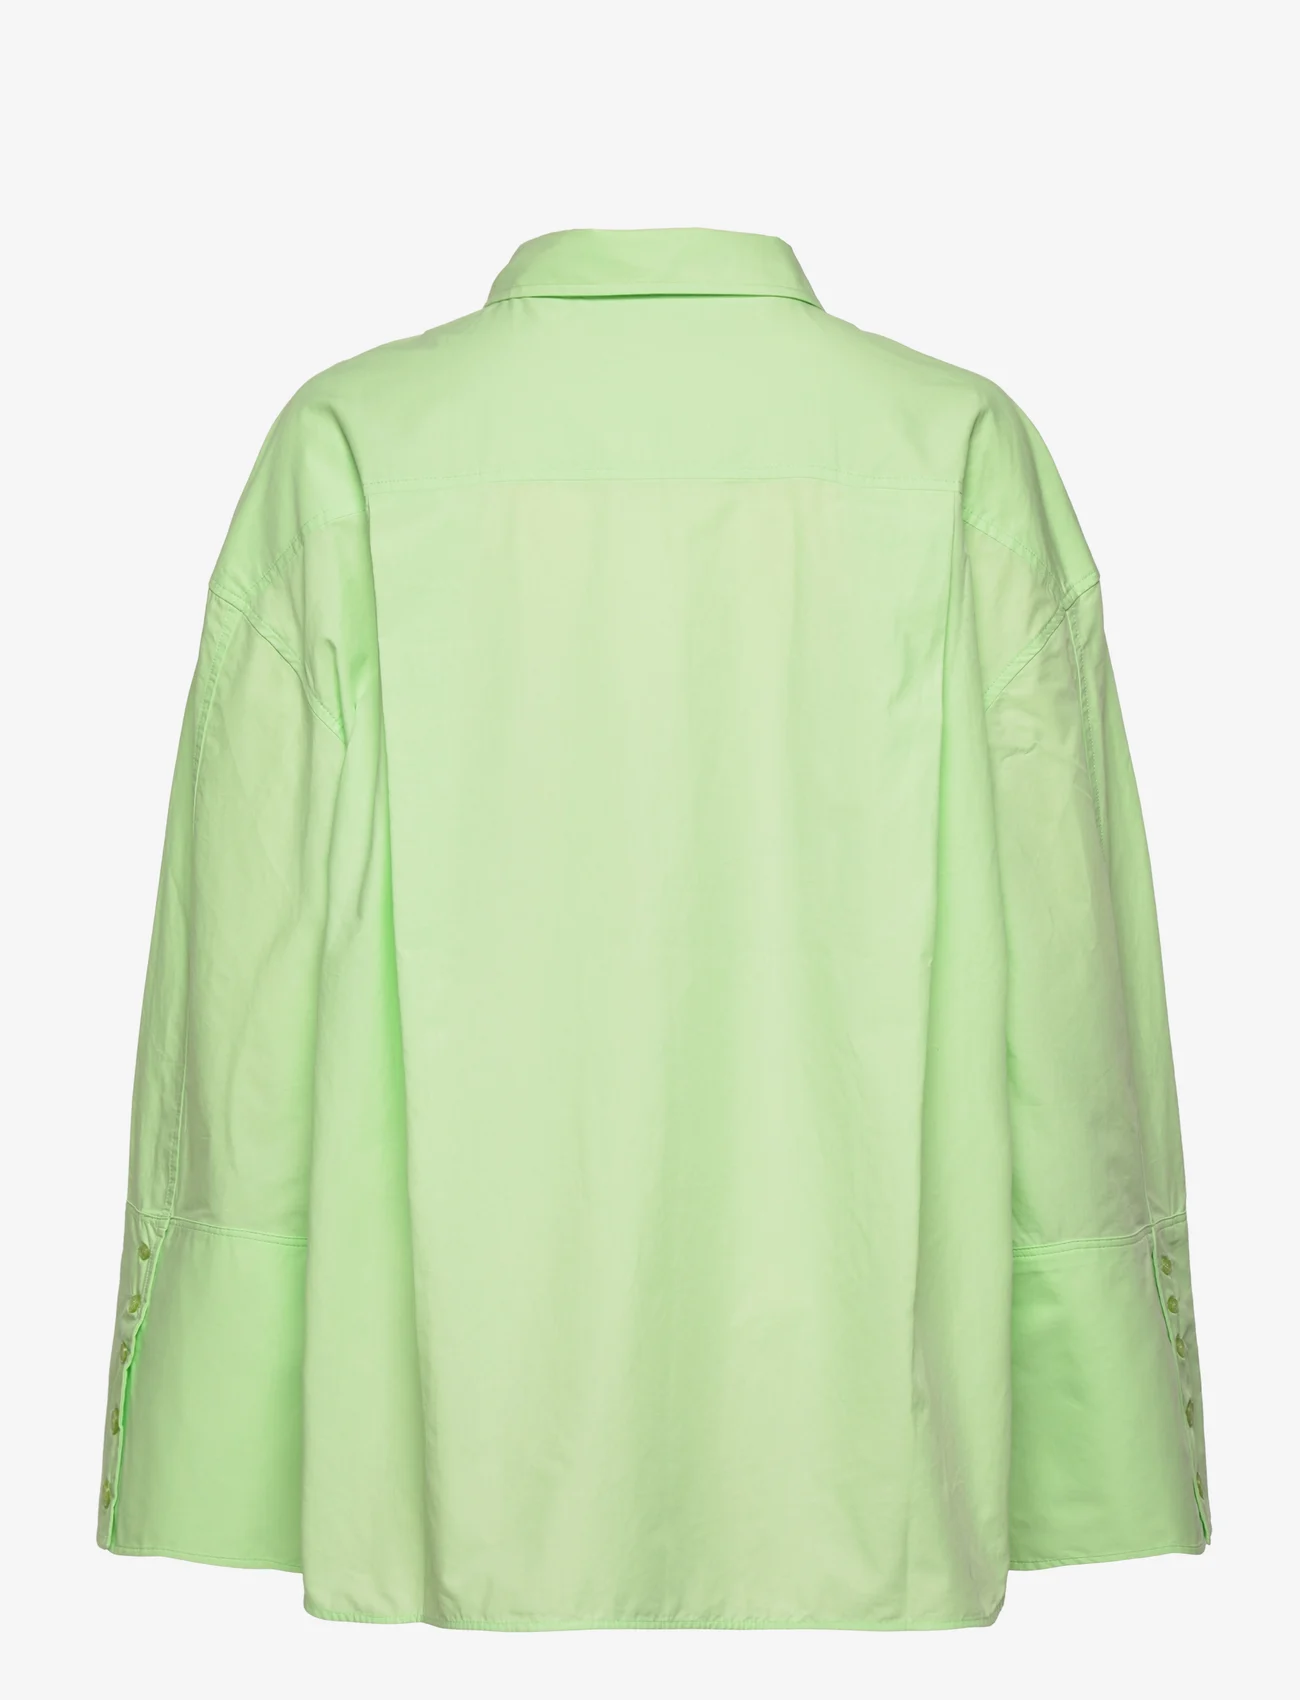 ROTATE Birger Christensen - Lipy Shirt - langärmlige hemden - paradise green - 1